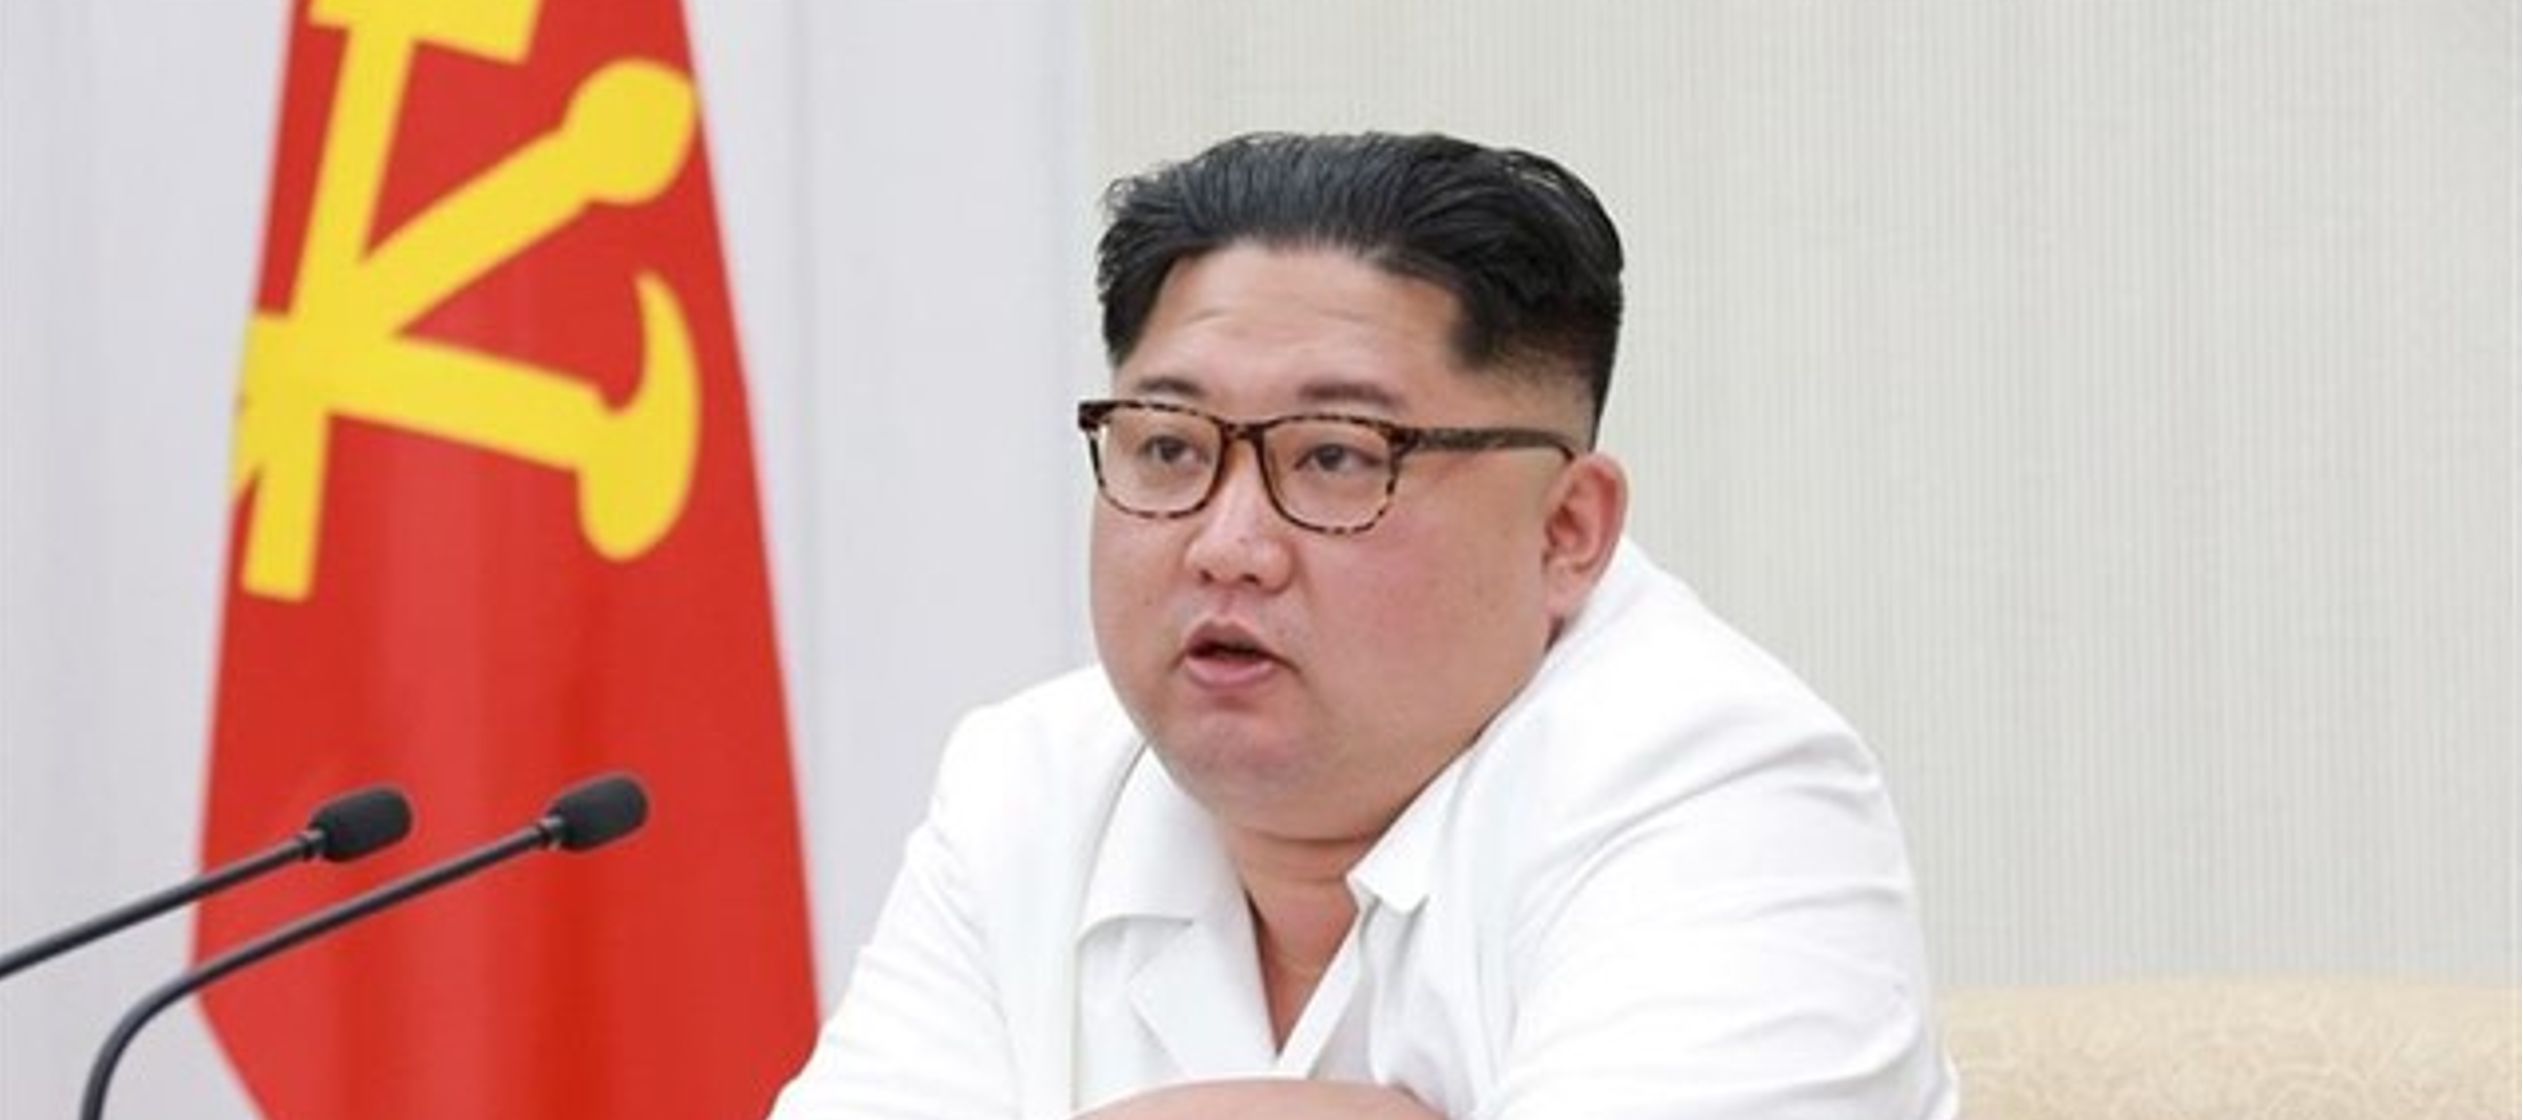 El líder norcoreano se ha mostrado dispuesto a cerrar dichas instalaciones a cambio de...